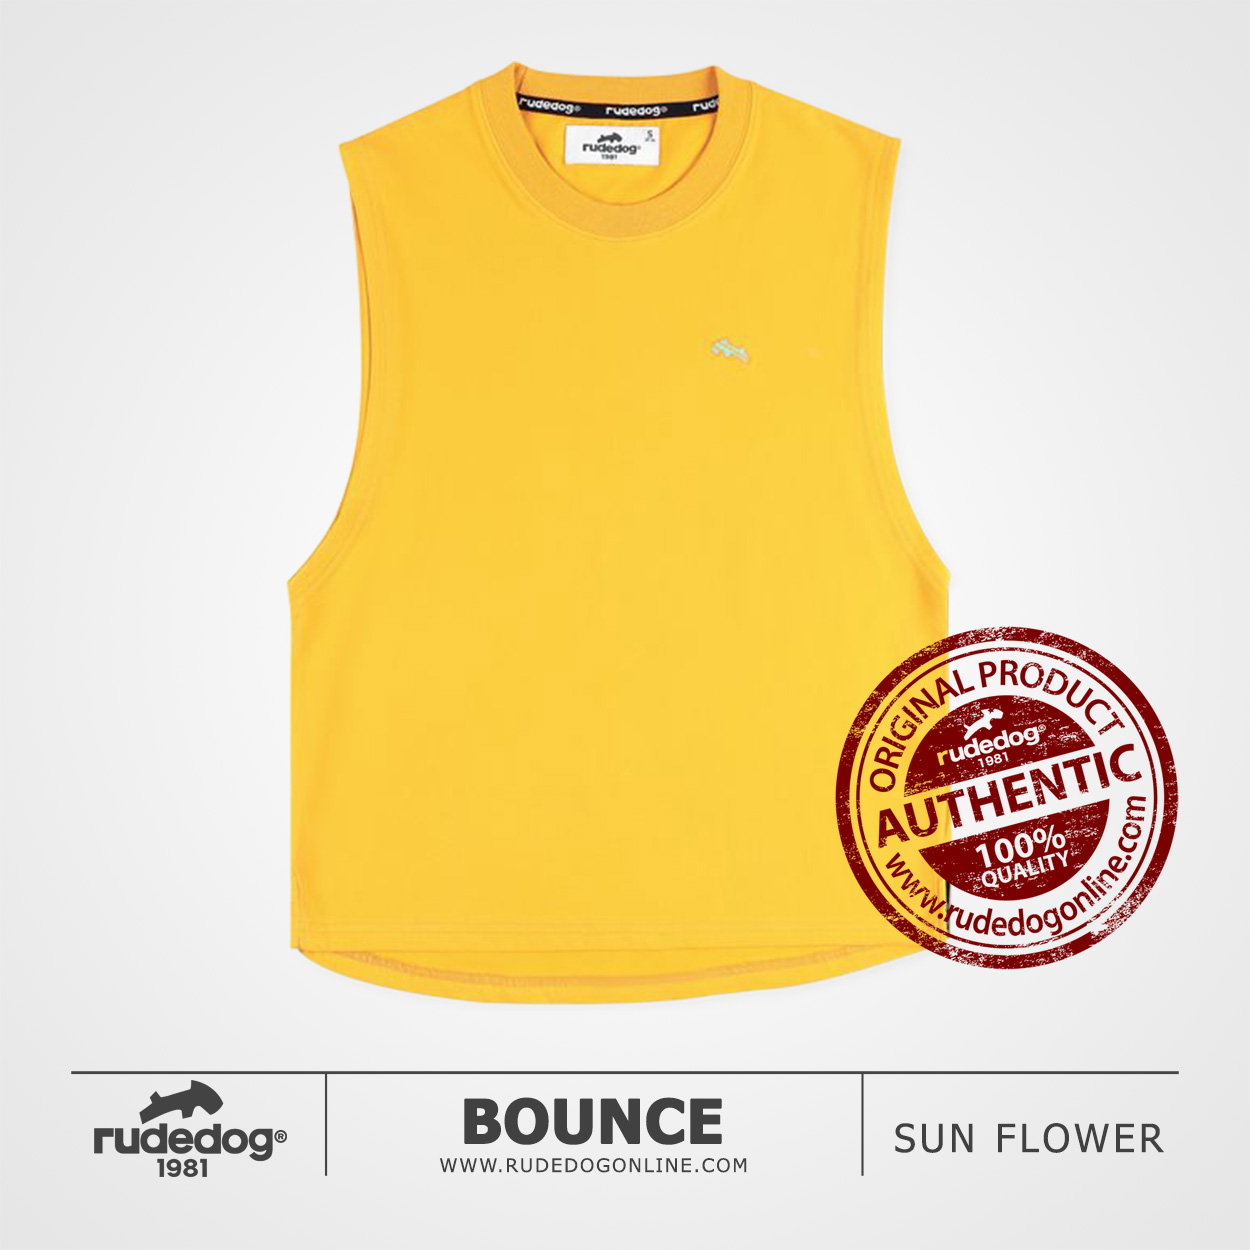 เสื้อยืดแขนกุด เว้าลึก rudedog รุ่น Bounce สีเหลืองซันฟลาวเวอร์